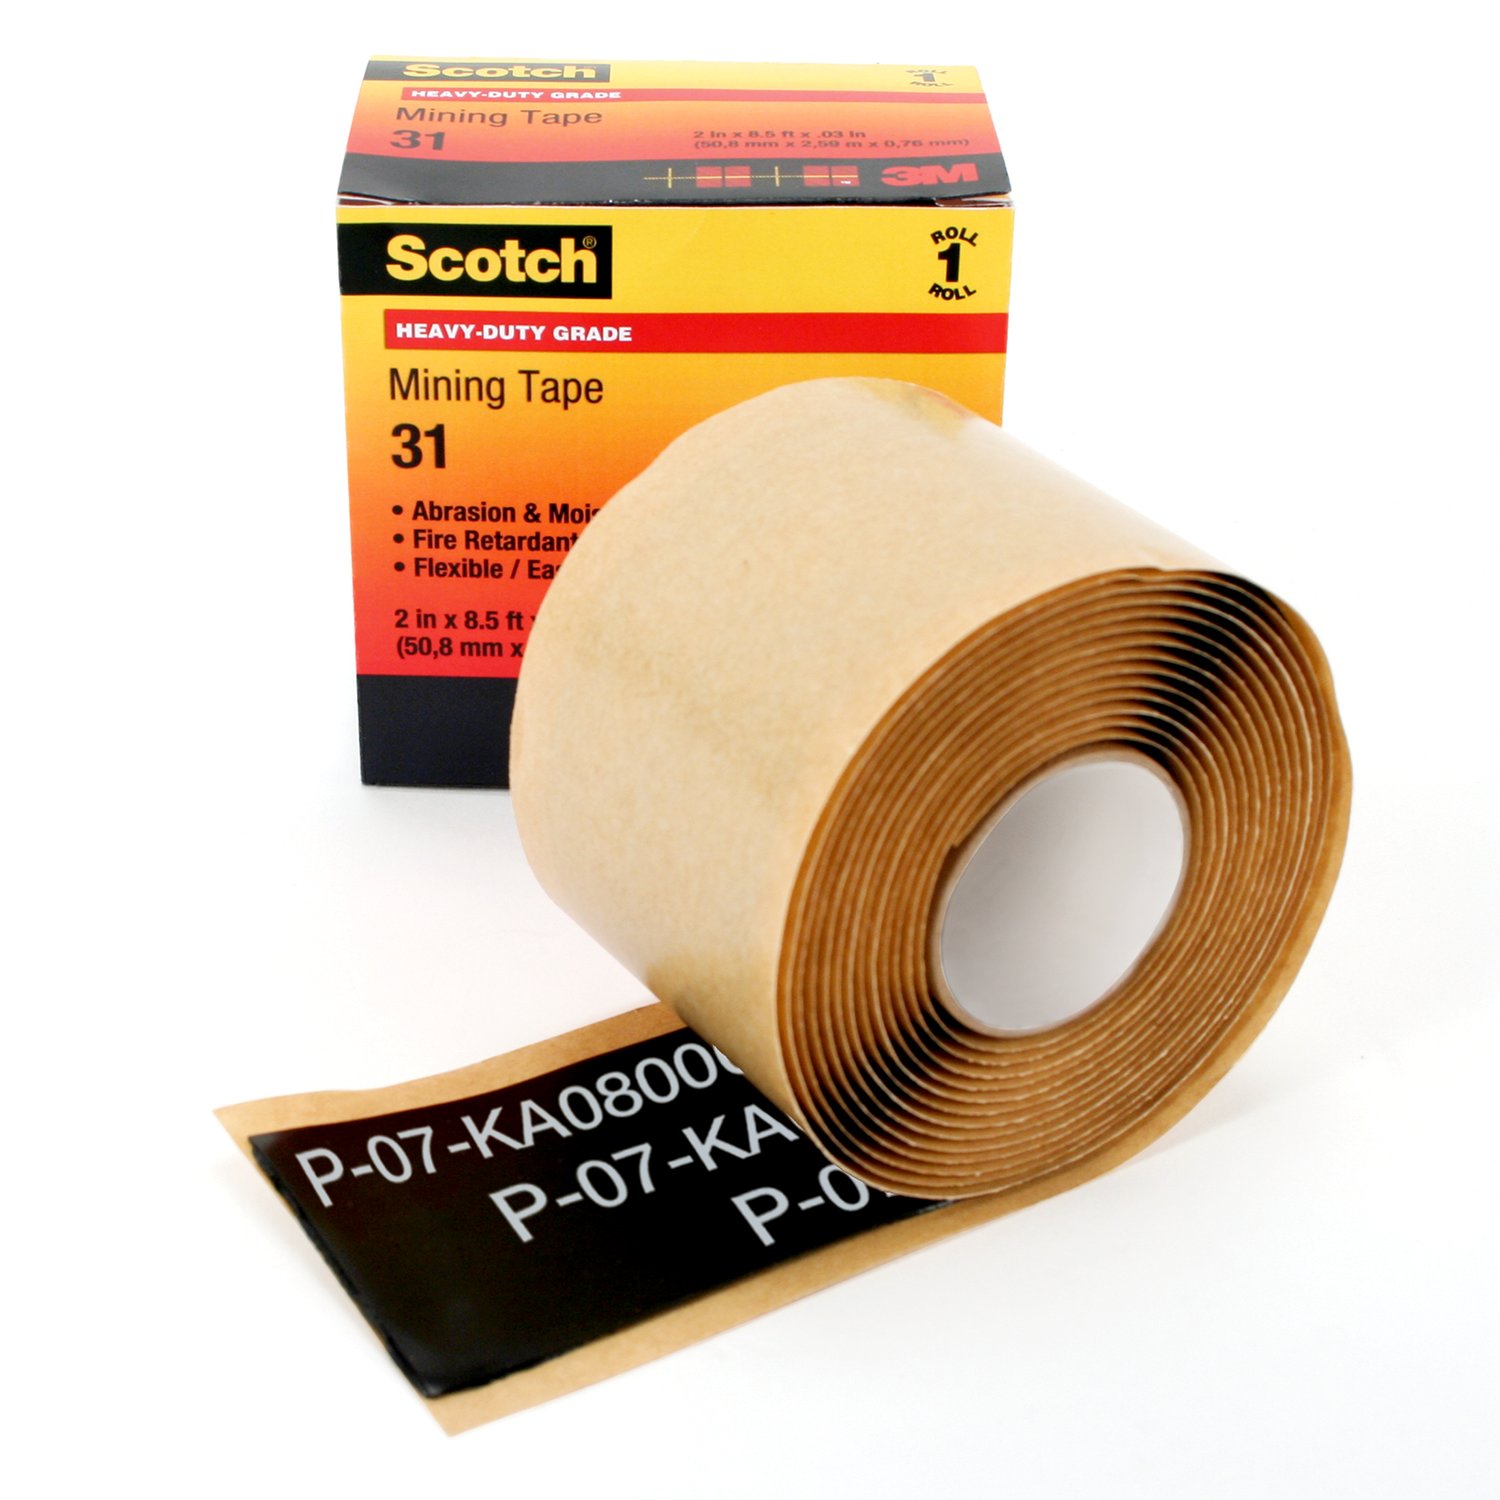 7000031770 - Scotch Heavy-Duty Mining Tape 31, 2 in x 10 ft, Black, 1 roll/carton,
10 rolls/Case